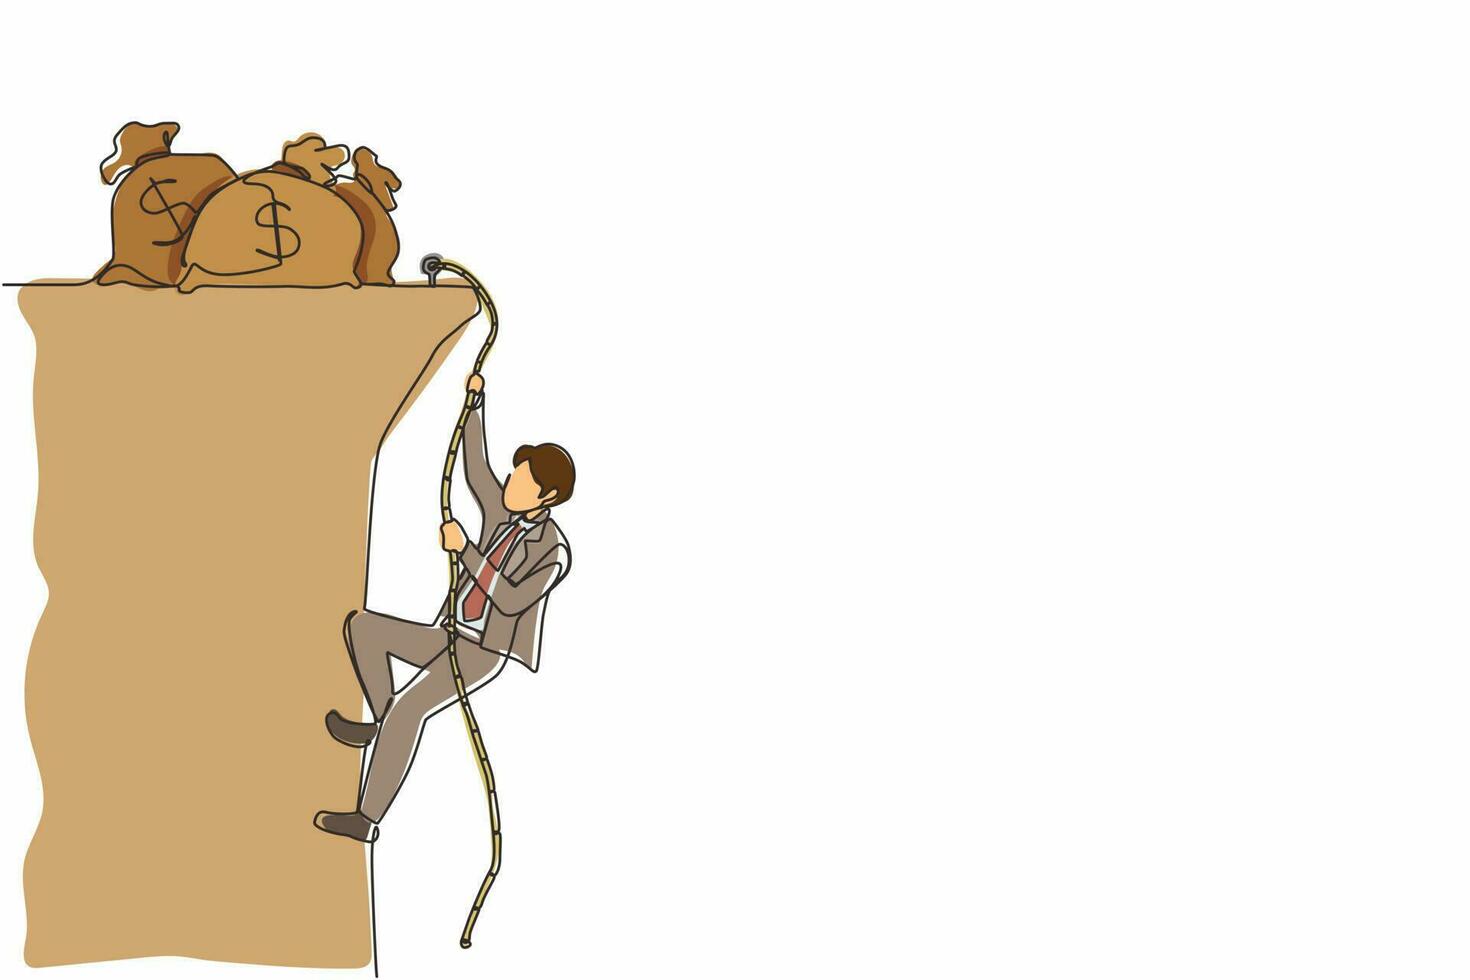 kontinuerlig en rad ritning affärsman gör rep klättring mot pengar påse. klättrare som hänger i rep och drar sig på toppen av en stenig bergsvägg. enda linje design vektorgrafisk illustration vektor